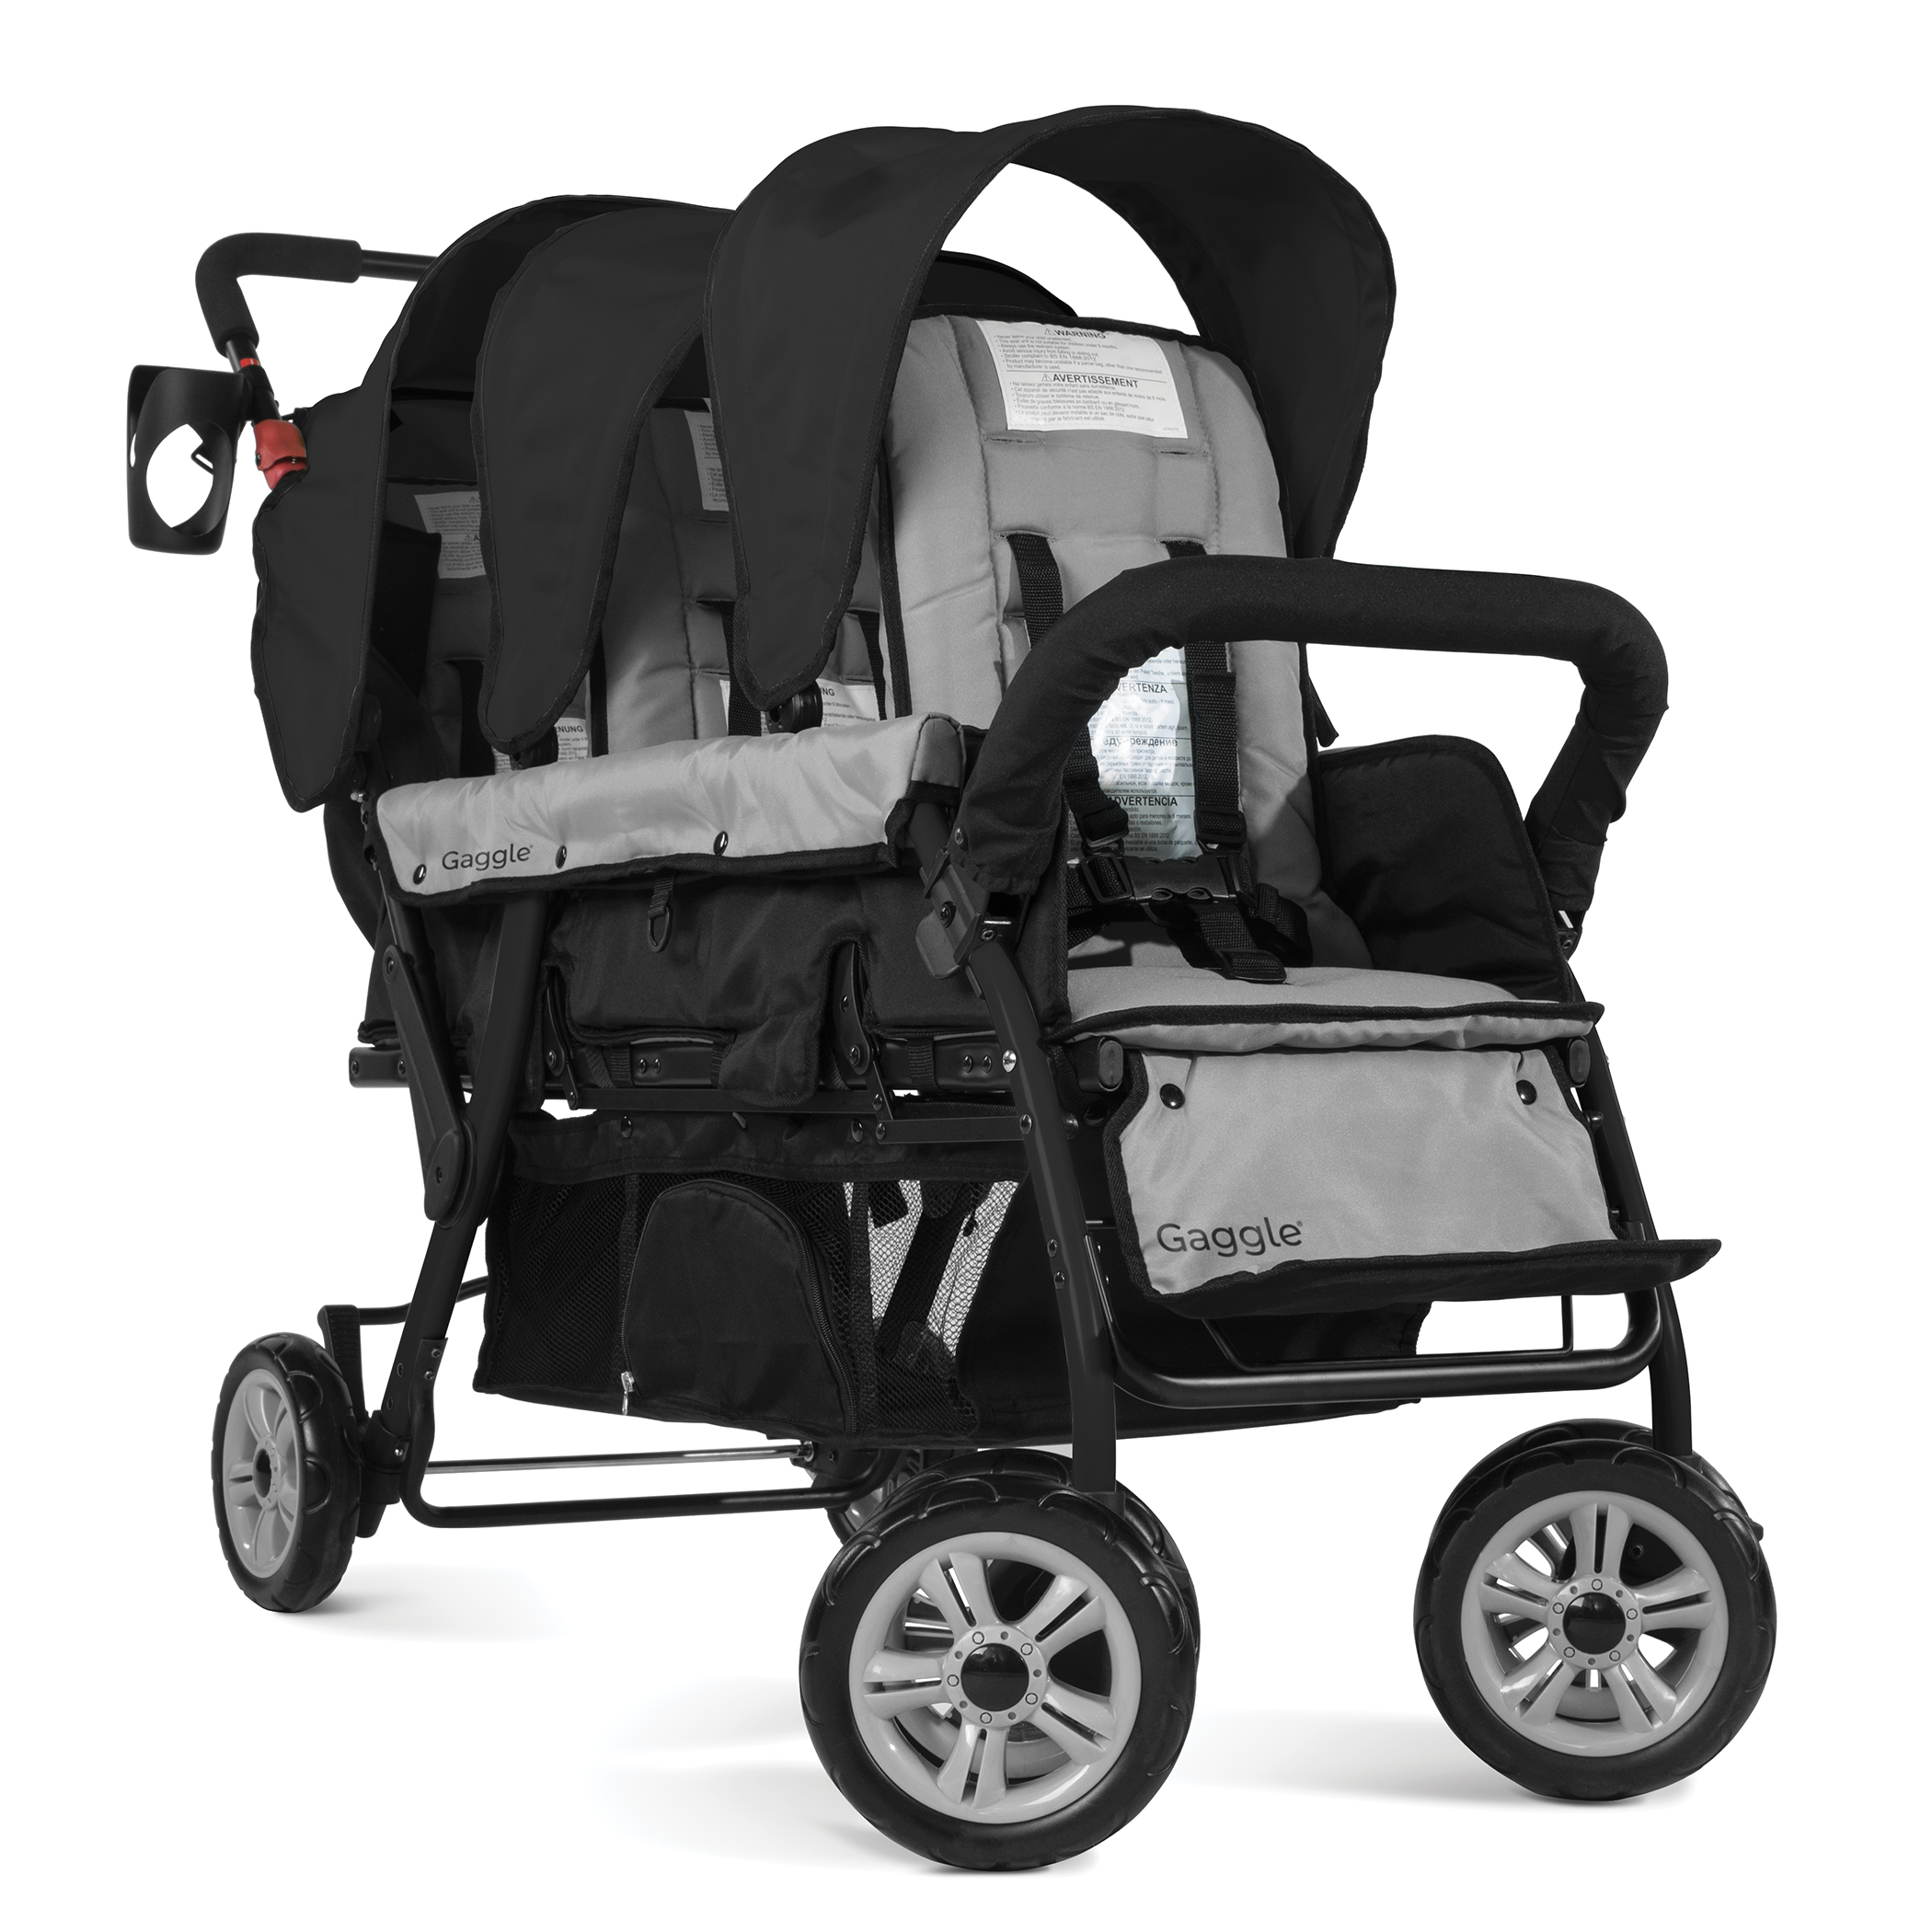 Gaggle Compass kinderwagen / buggy voor 3 kinderen in zwart